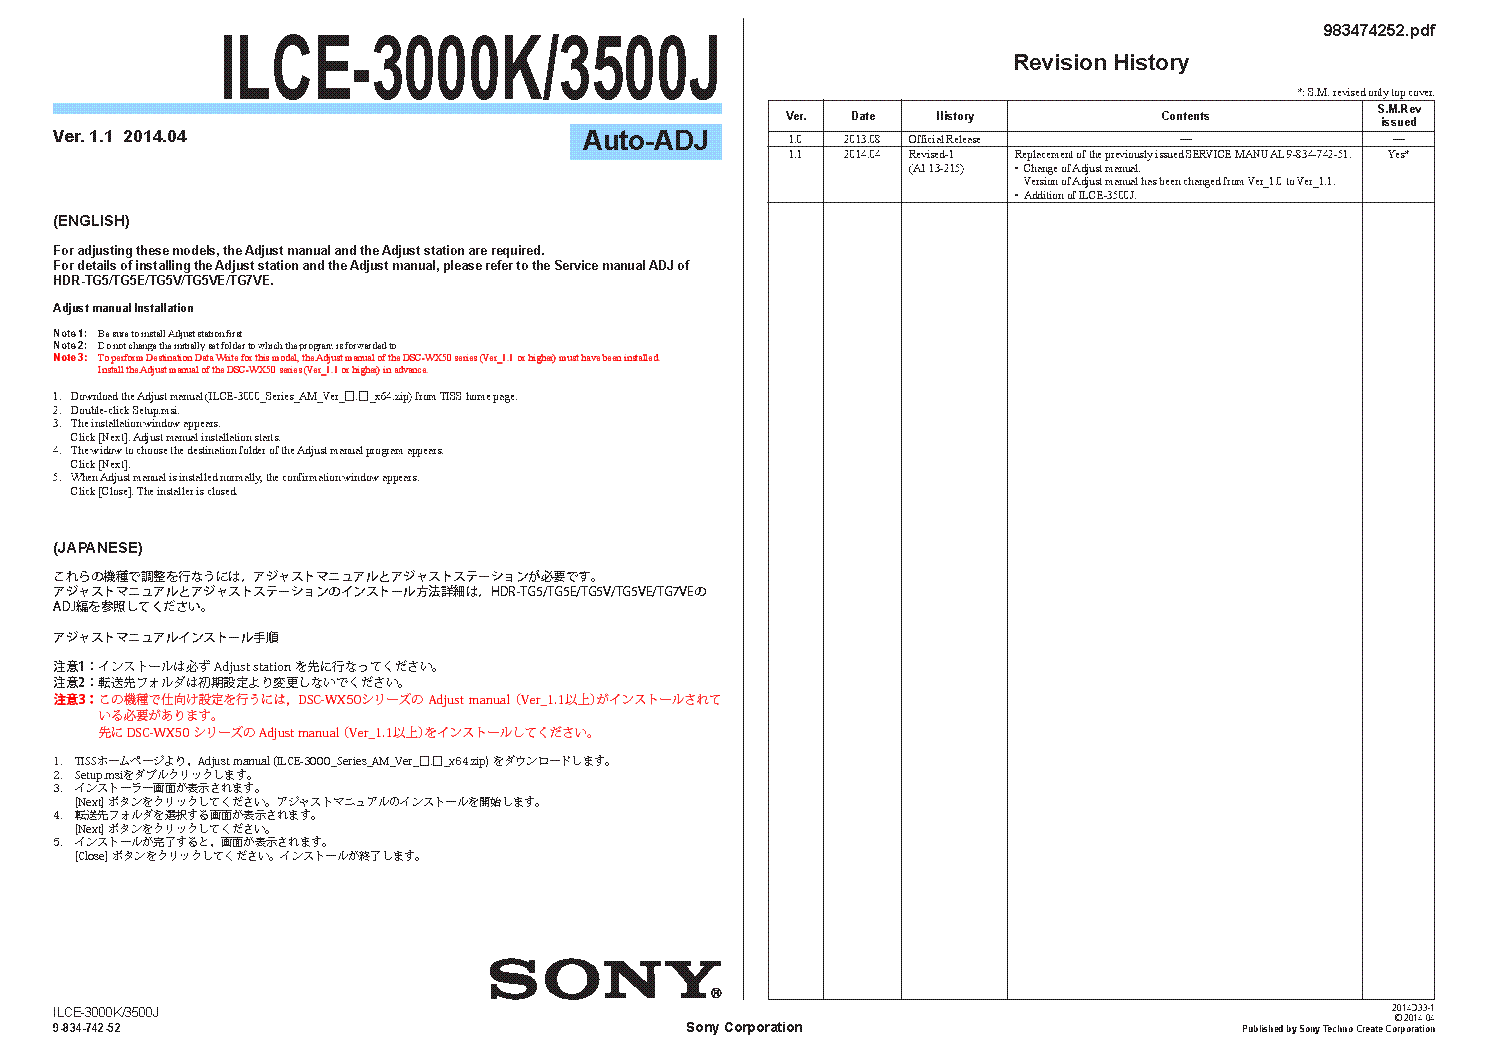 SONY ILCE-3000K ILCE-3500J VER.1.1 ADJ service manual (1st page)